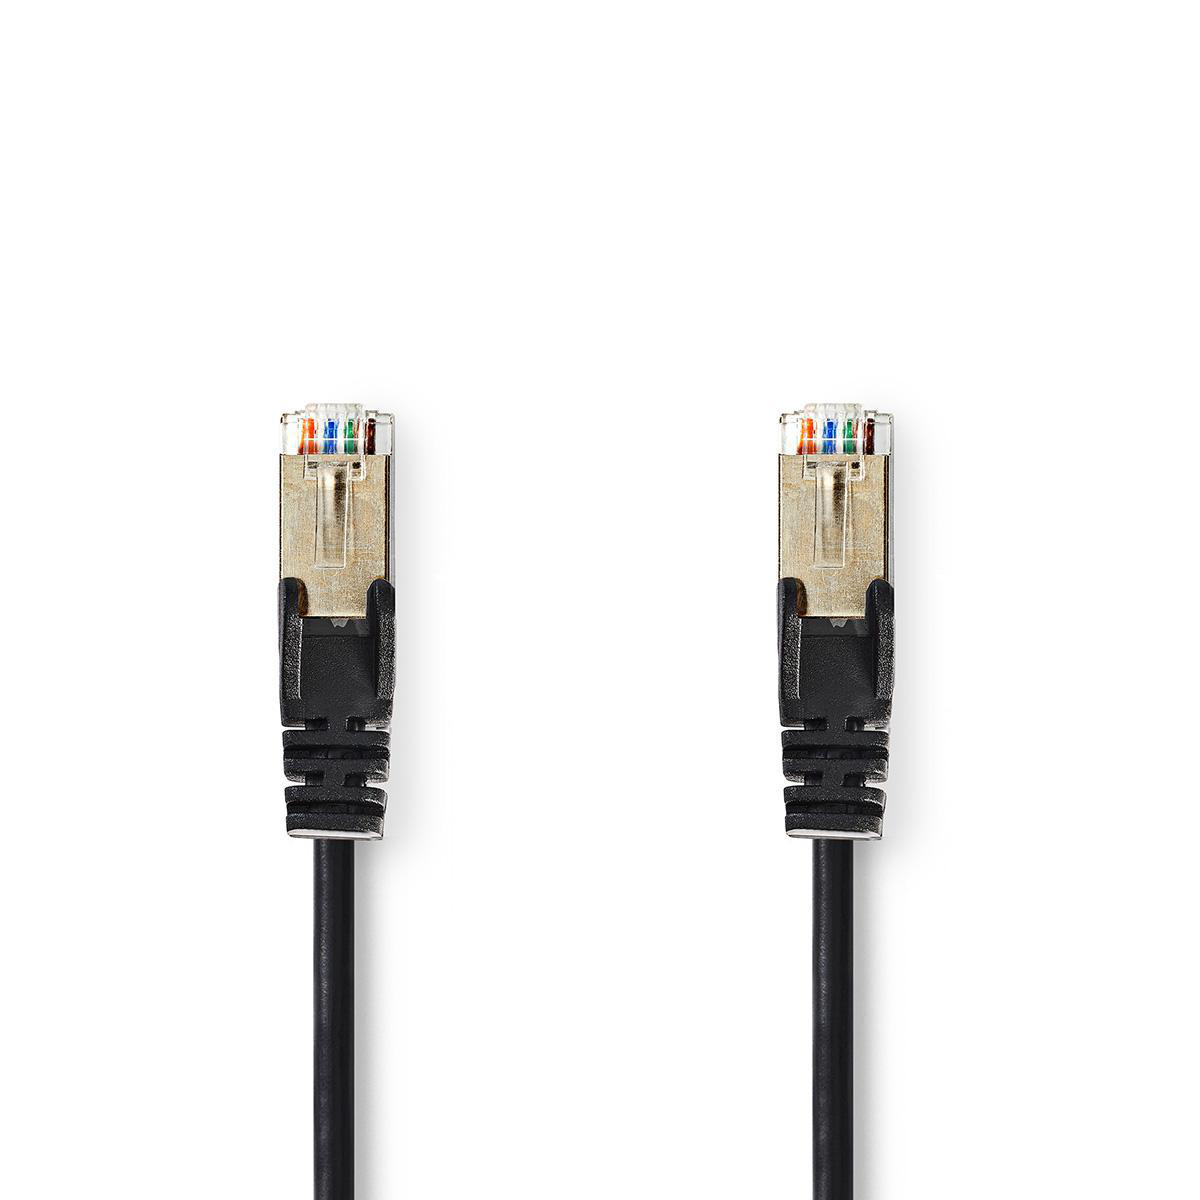 Nedis síťový kabel SF/UTP CAT5e, zástrčka RJ45 - zástrčka RJ45, 15 m, černá (CCGP85121BK150)